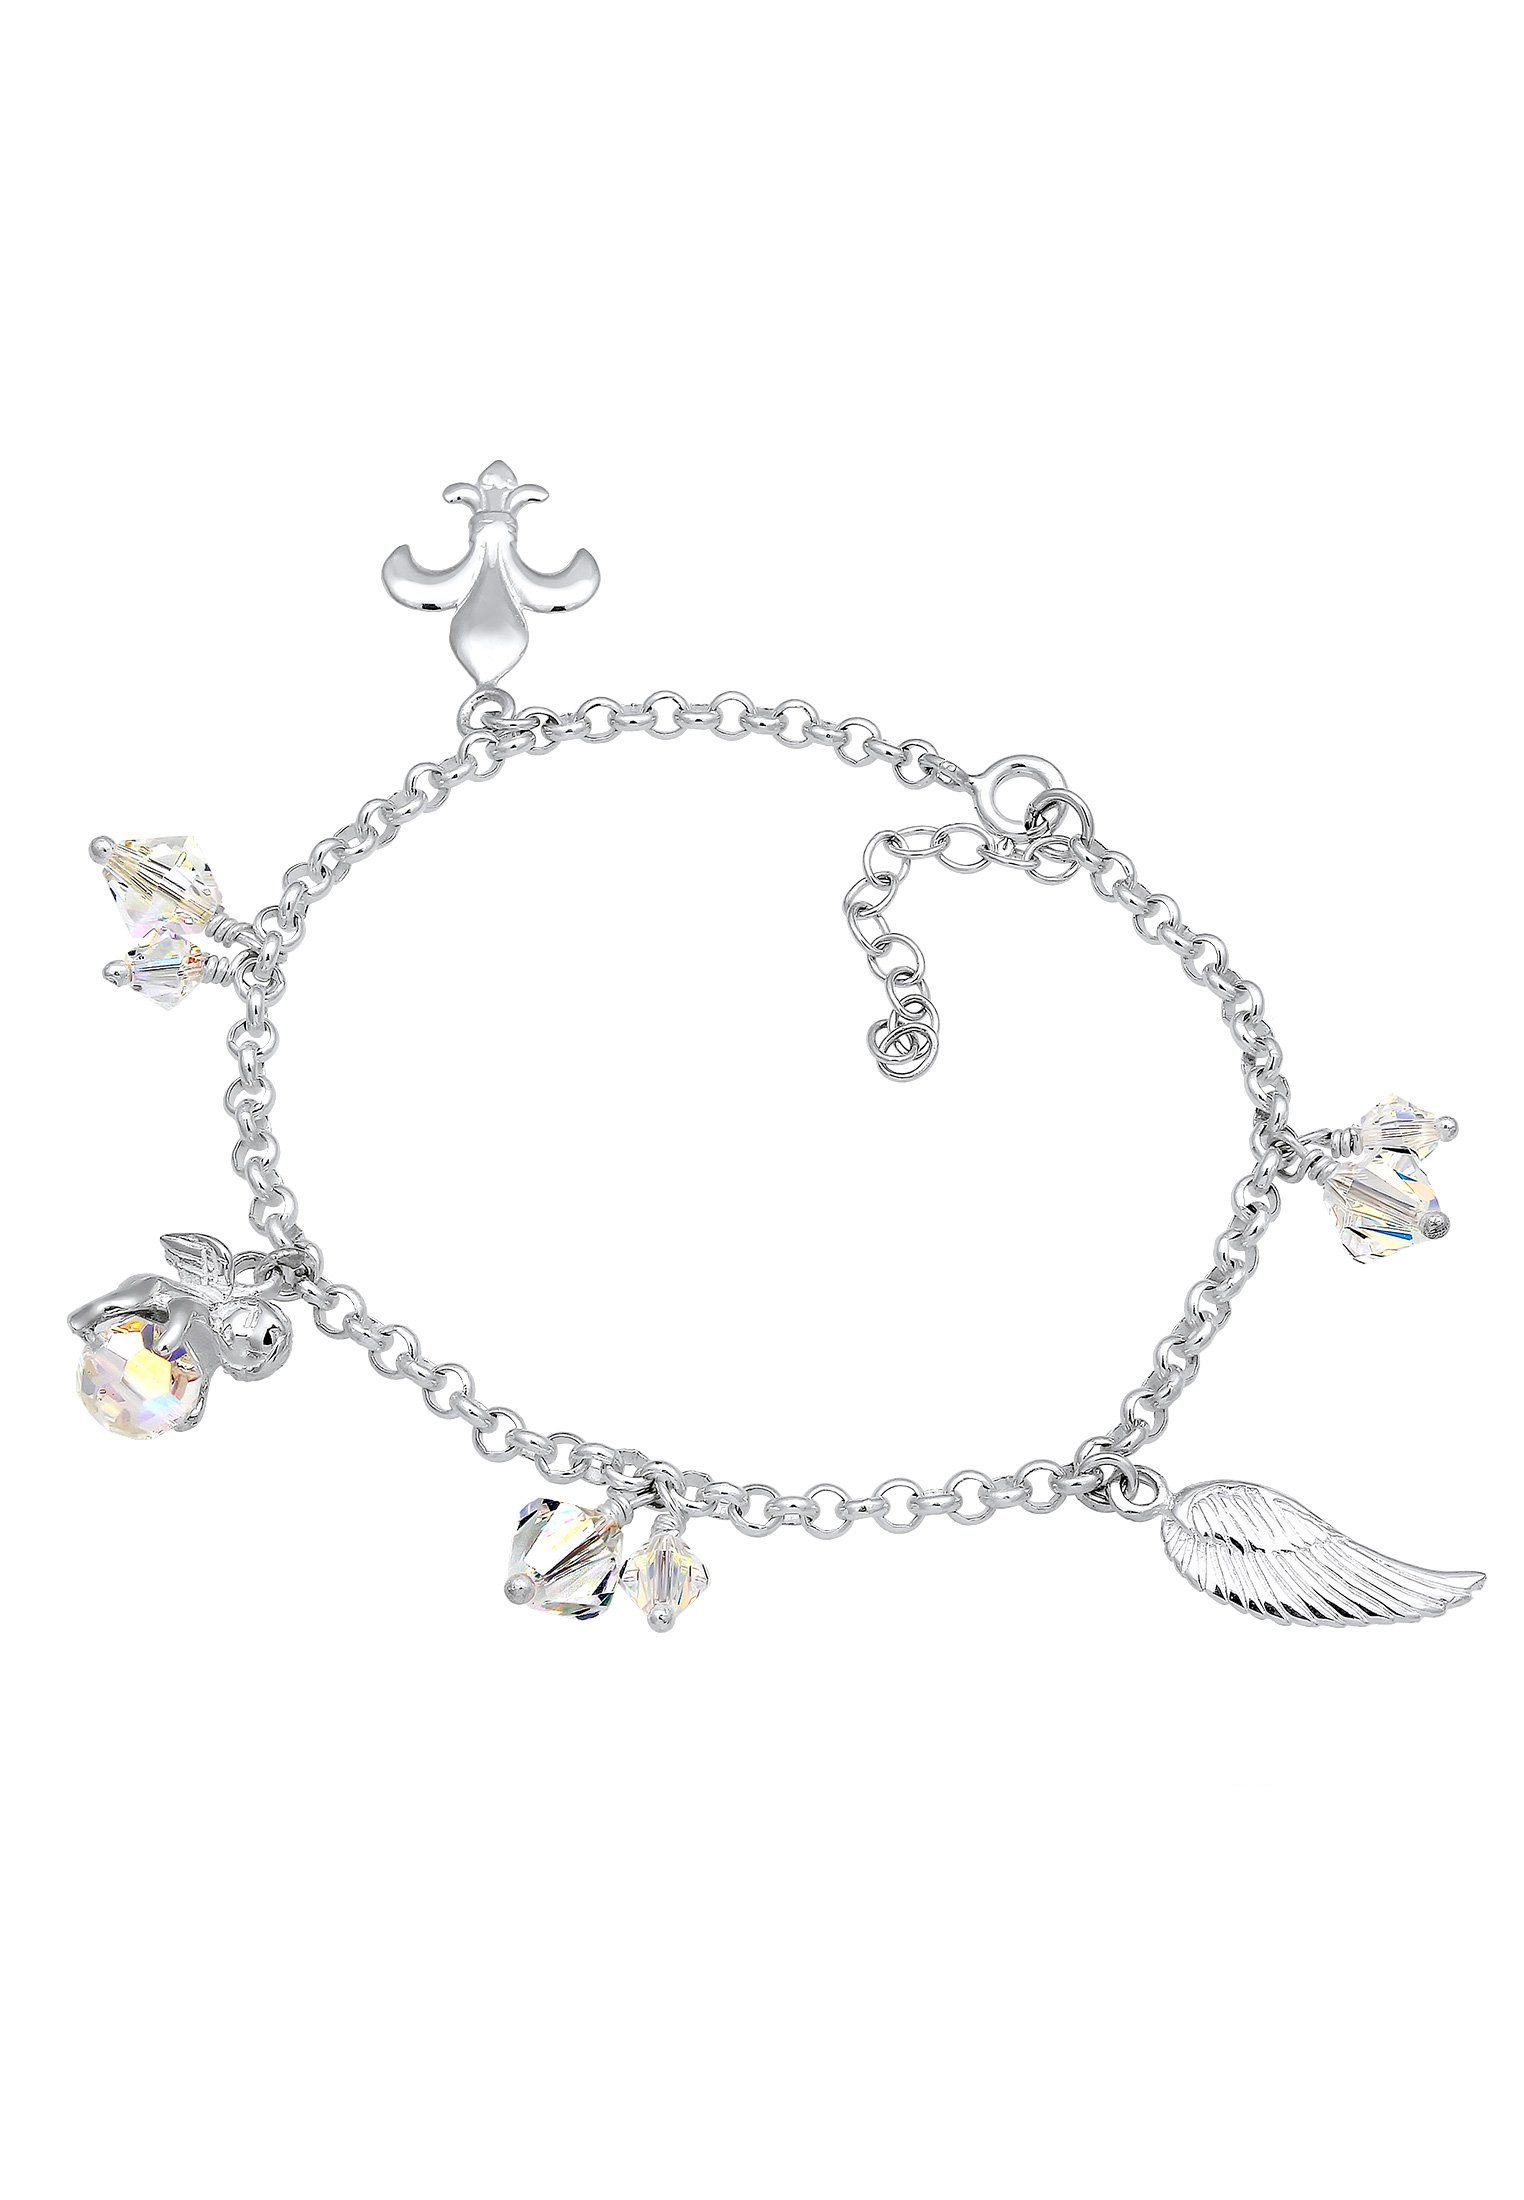 Nenalina Armband Bettelarmband Anhänger Engel Flügel 925 Silber